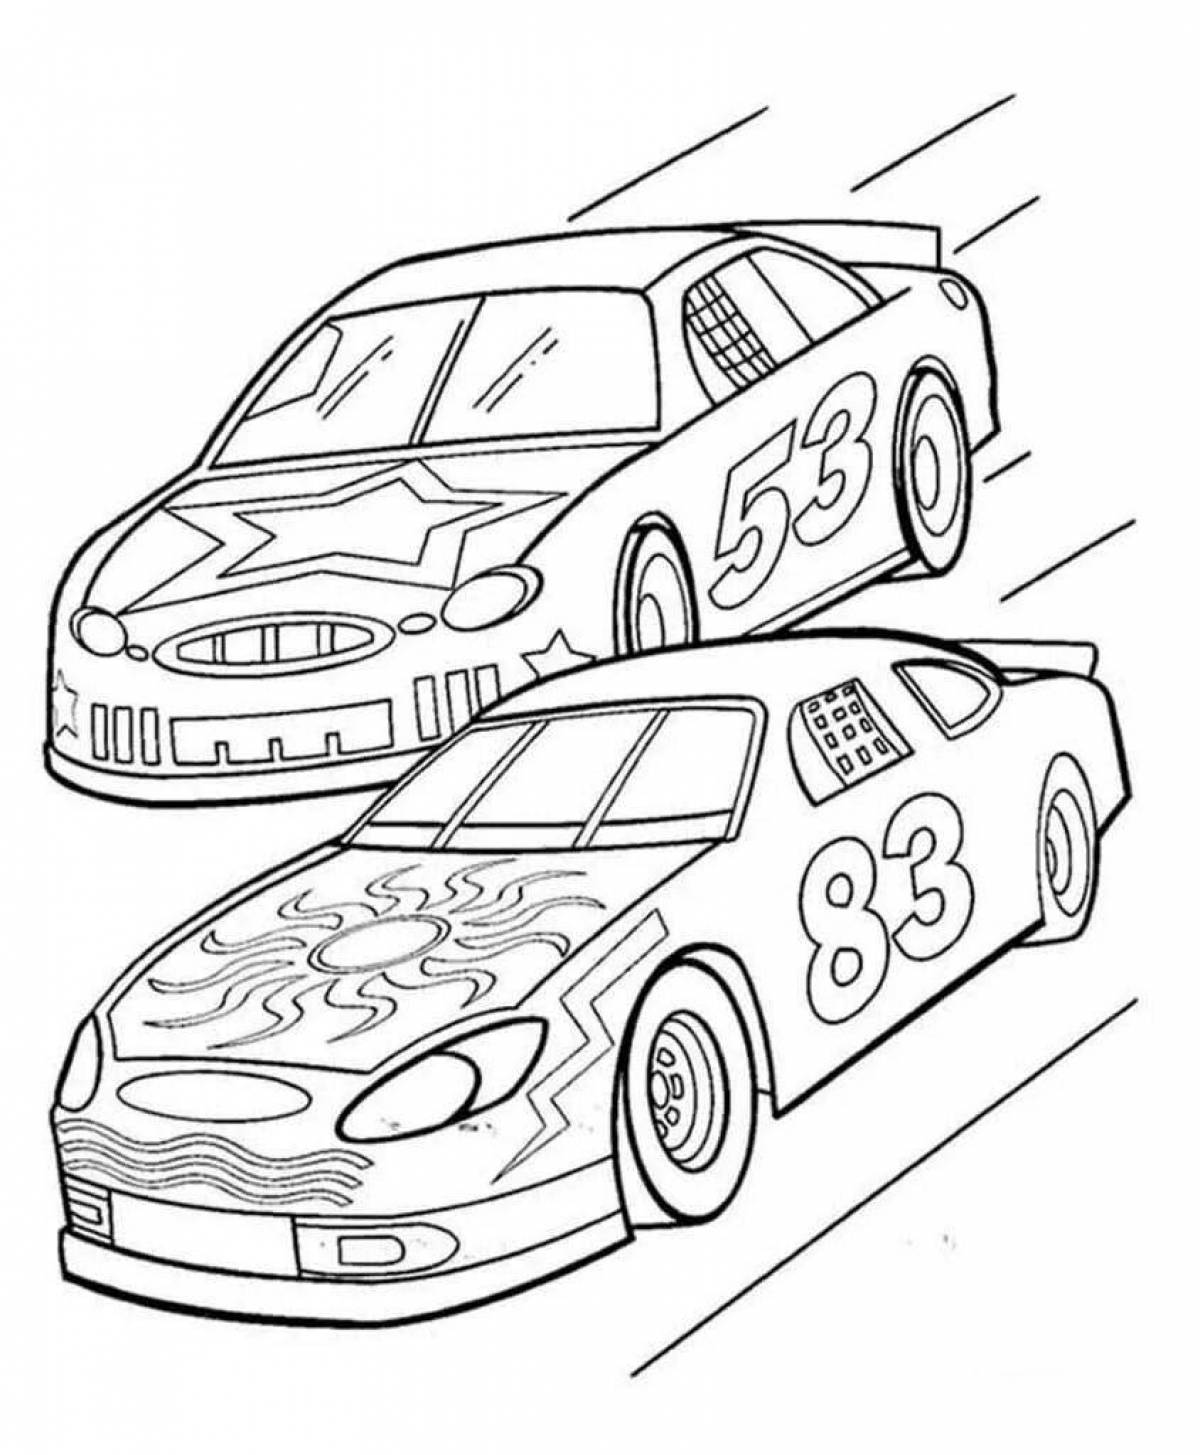 Incredible racing car coloring book for preschoolers